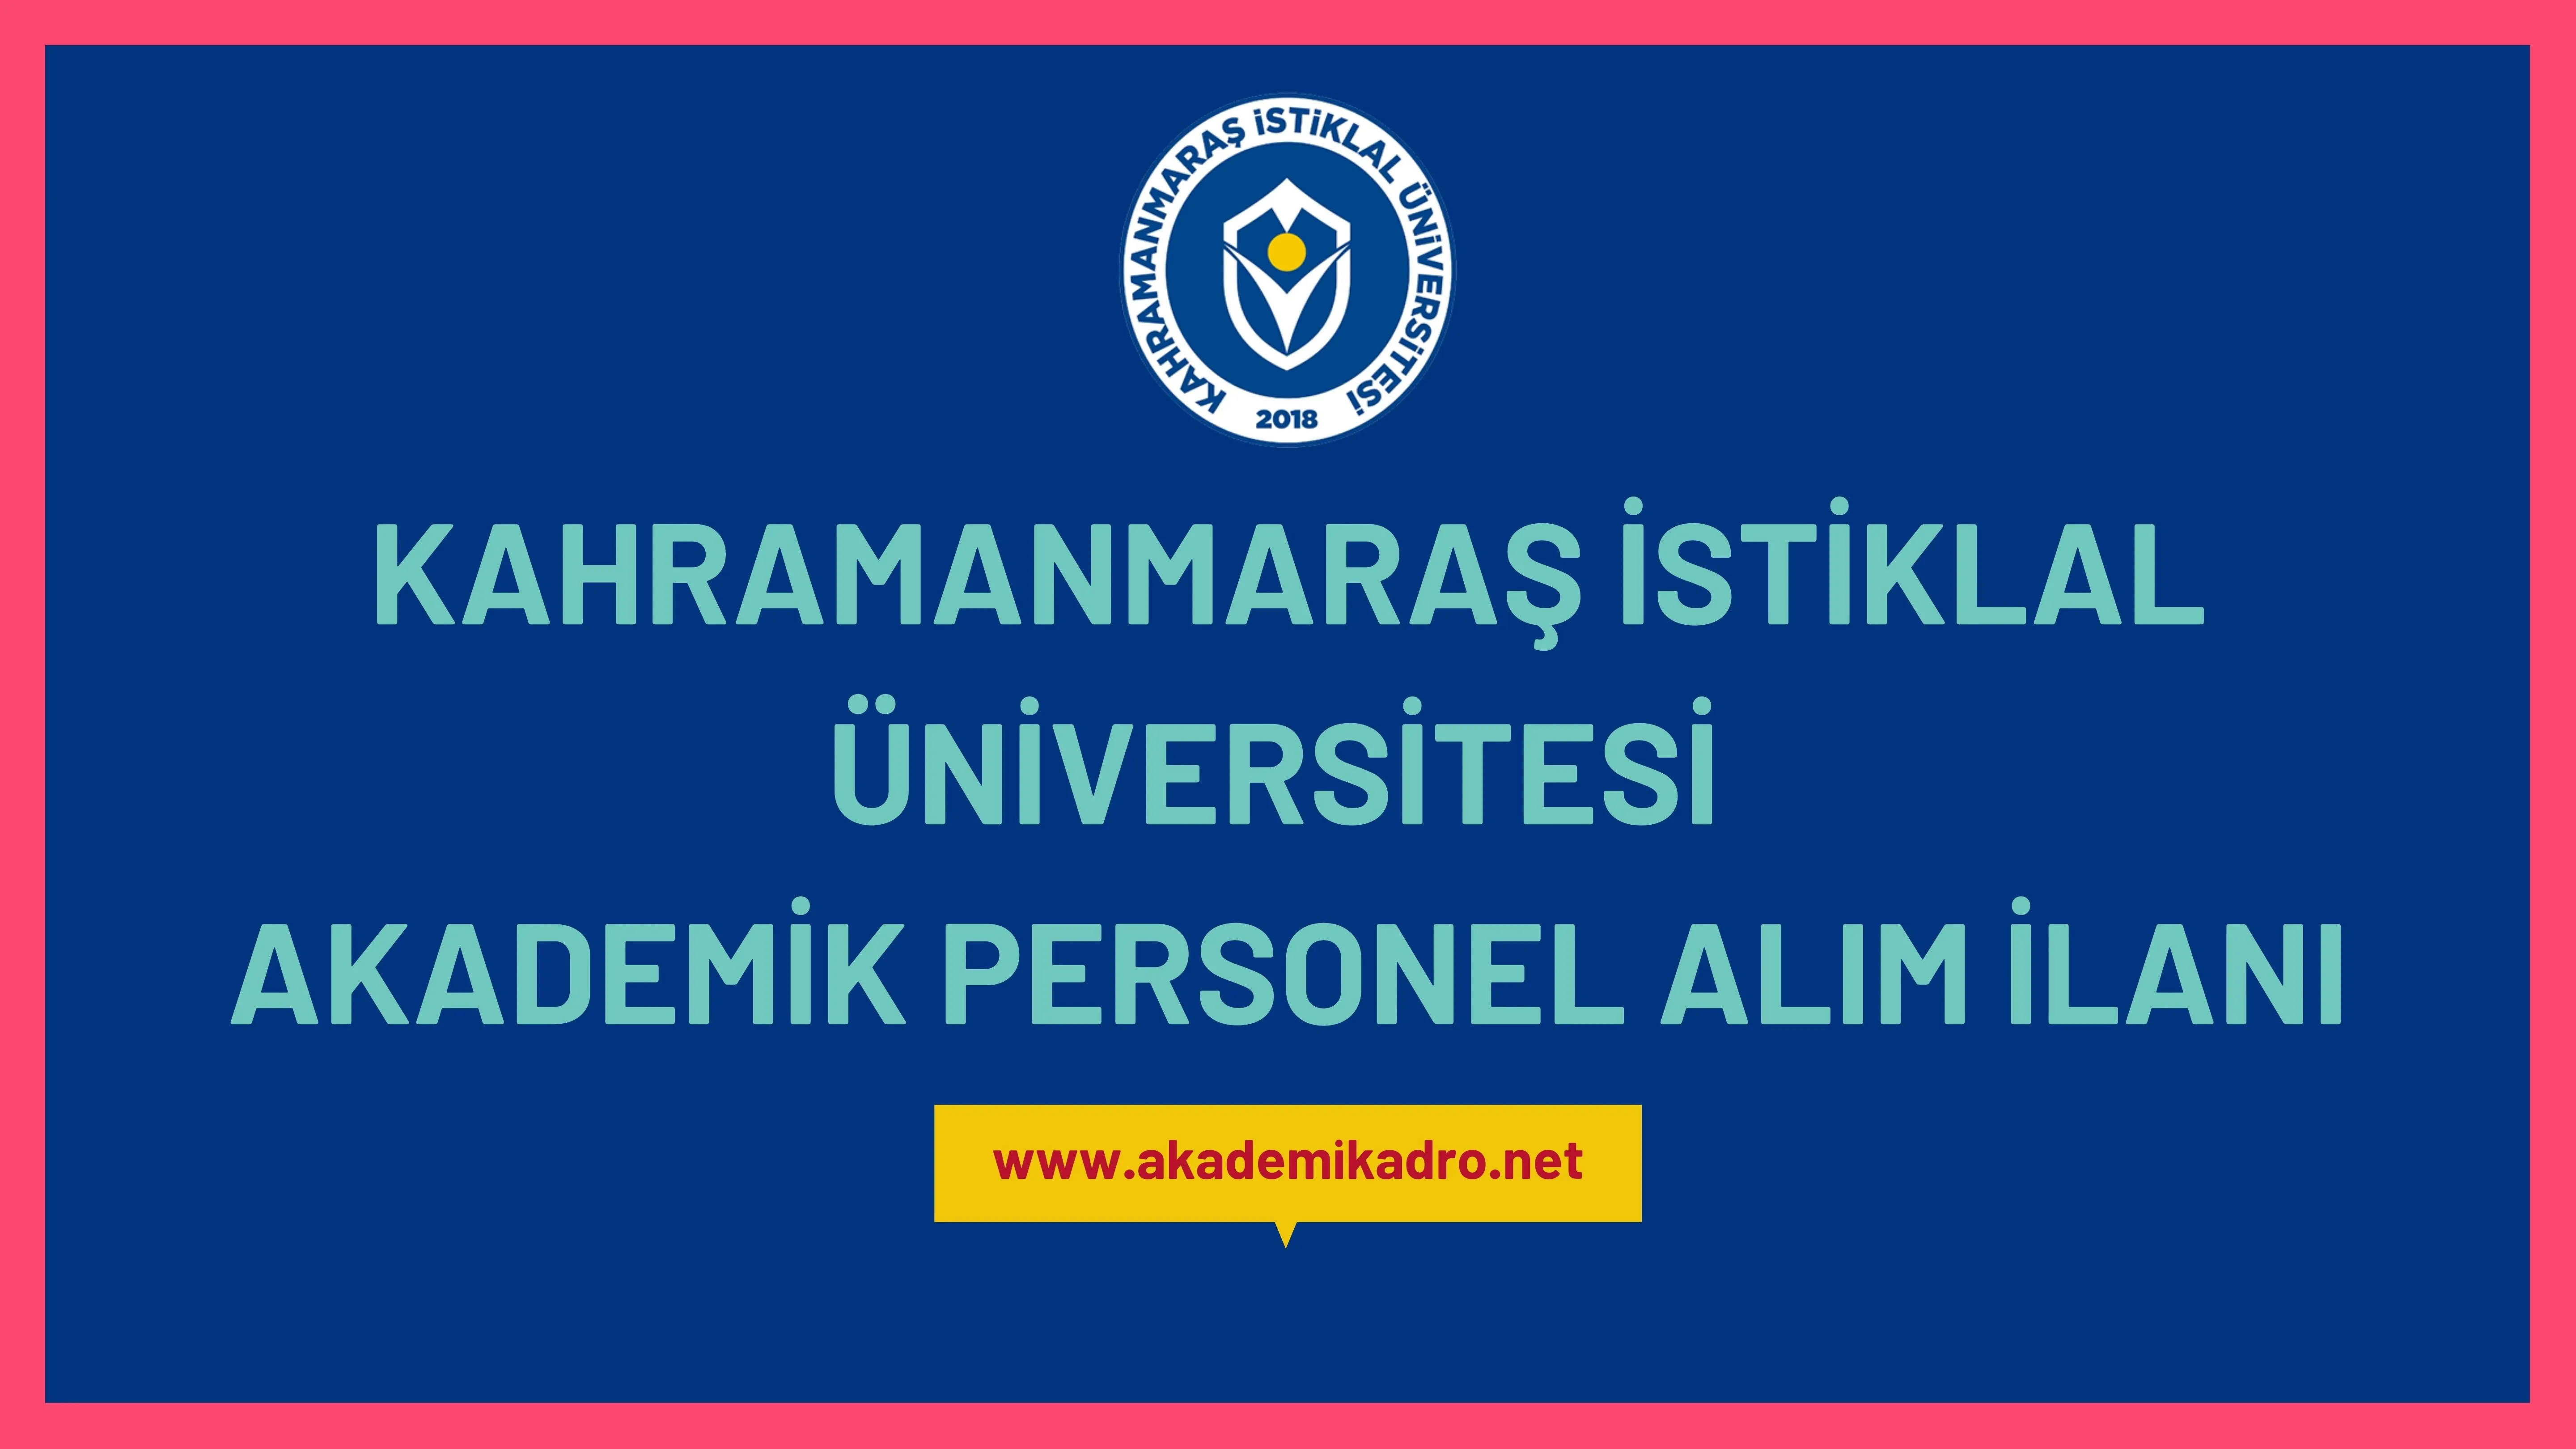 Kahramanmaraş İstiklal Üniversitesi çeşitli branşlarda 12 öğretim üyesi alacak.